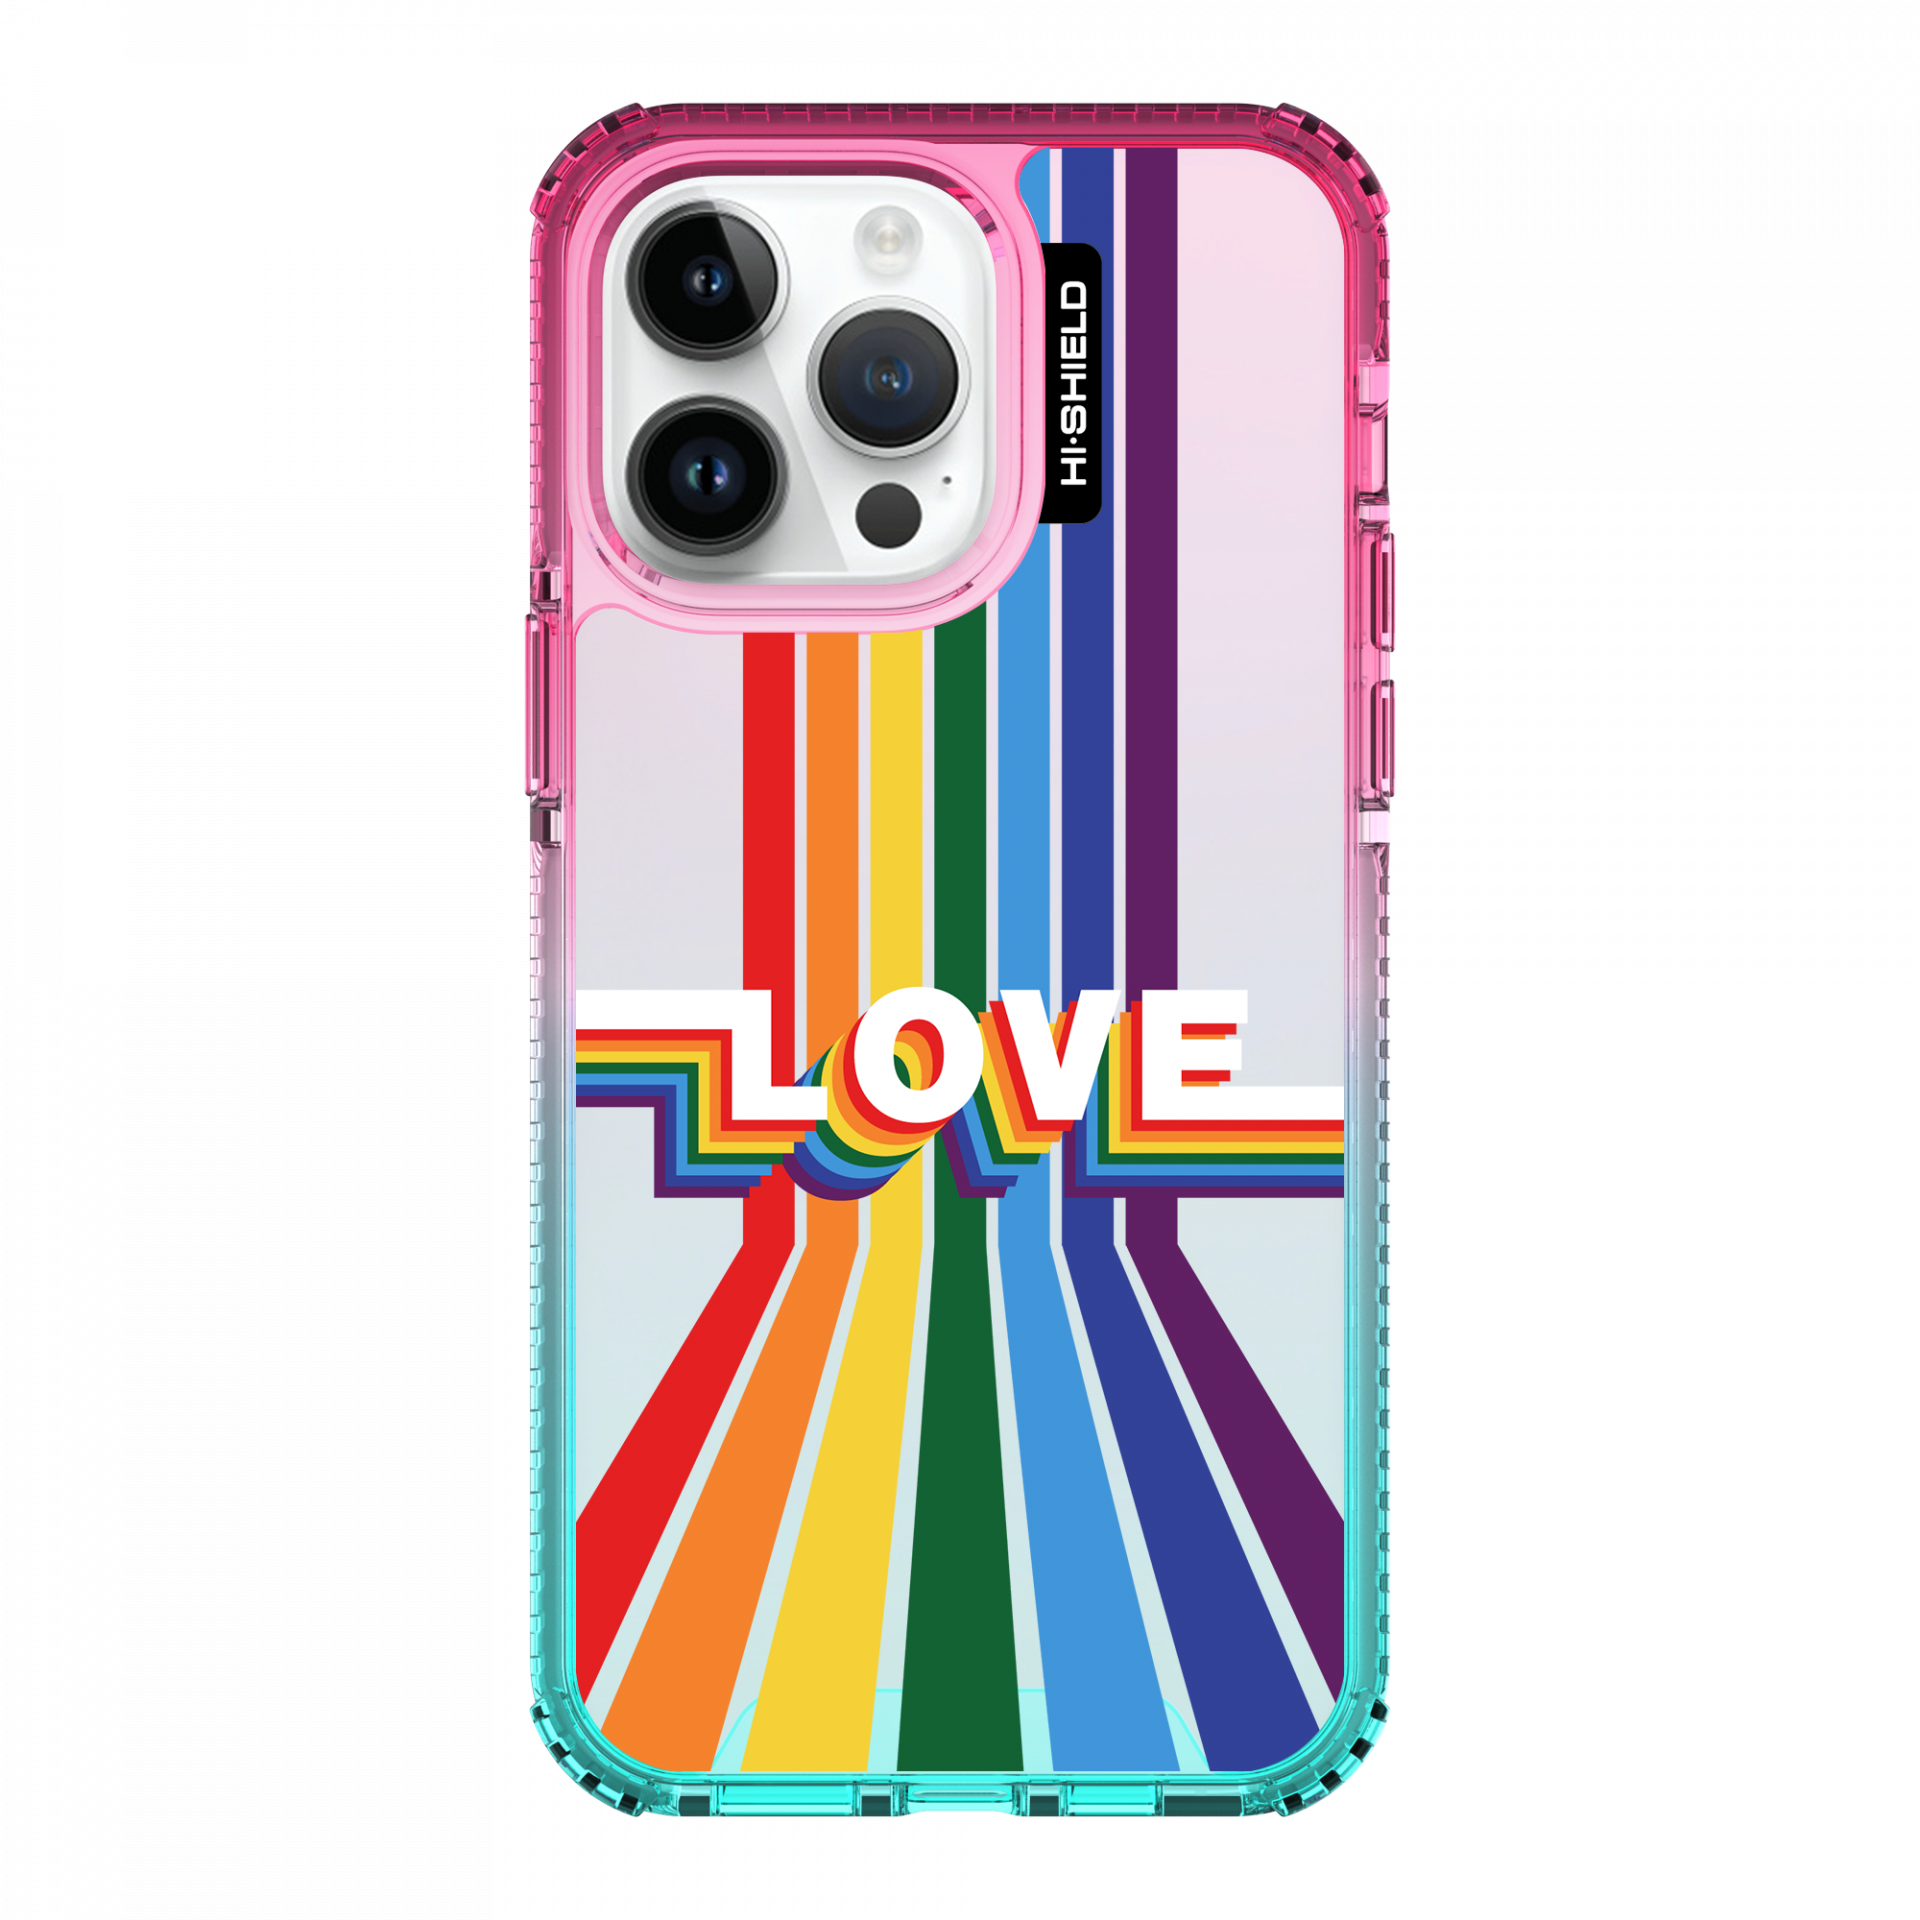 HI-SHIELD Stylish เคสใสกันกระแทก iPhone รุ่น Rainbow1 [เคส iPhone14 Promax]